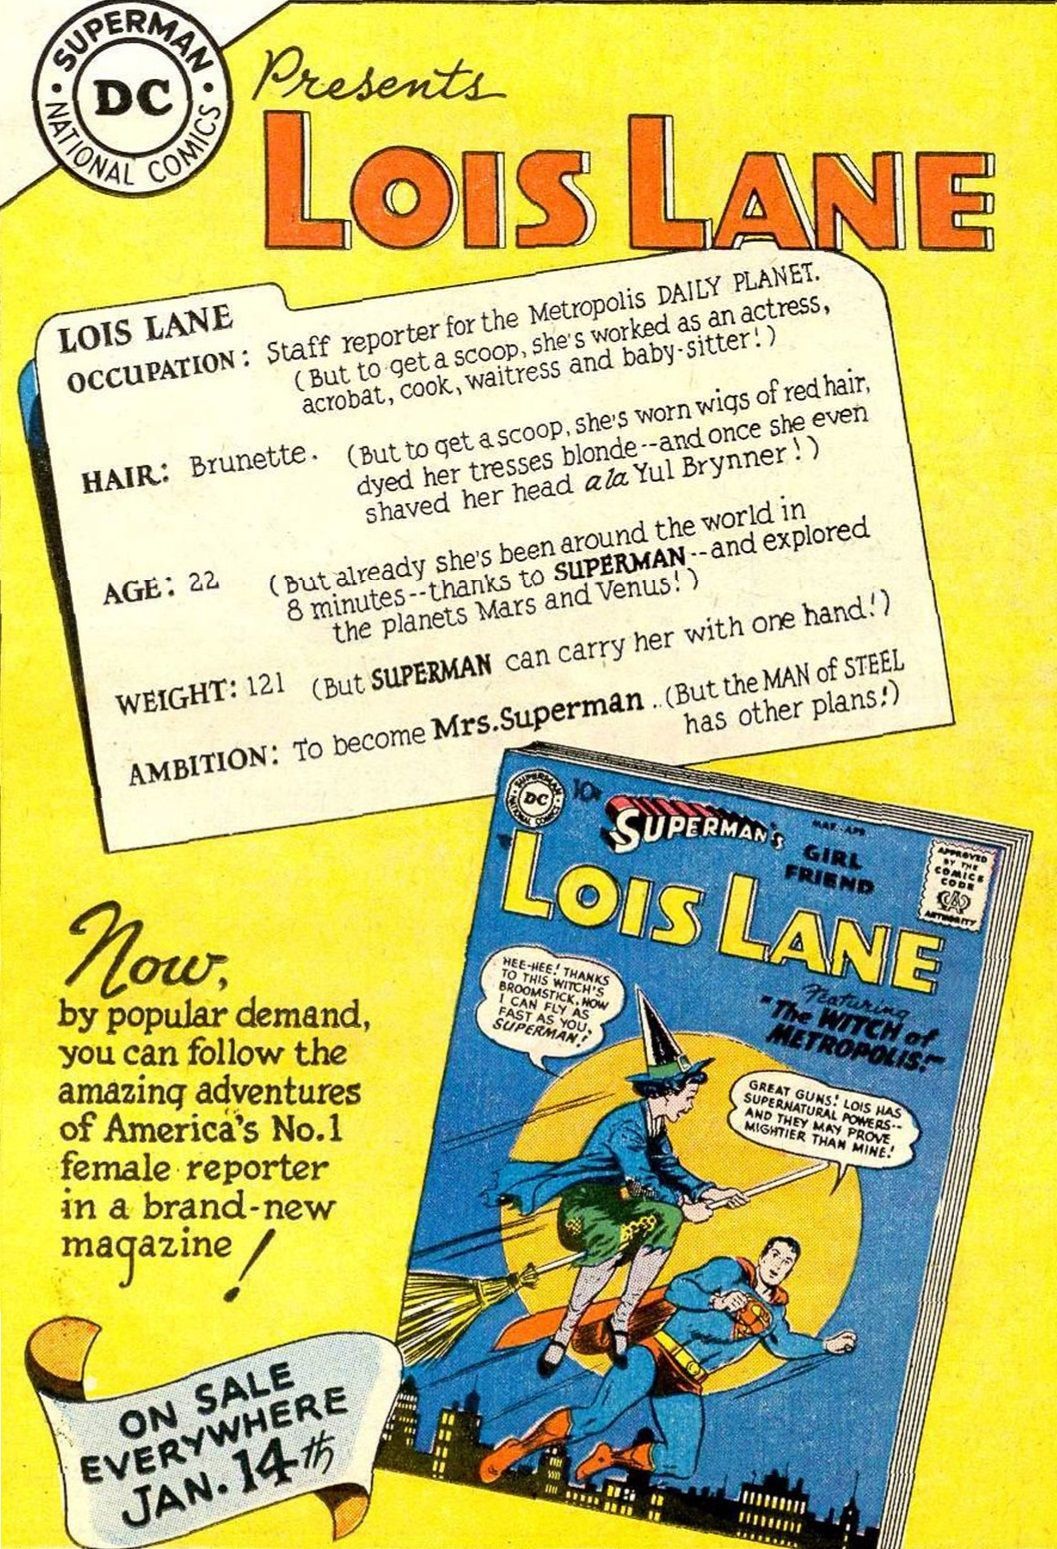 Ki idősebb, Superman vagy Lois Lane? (Ez komplikált)